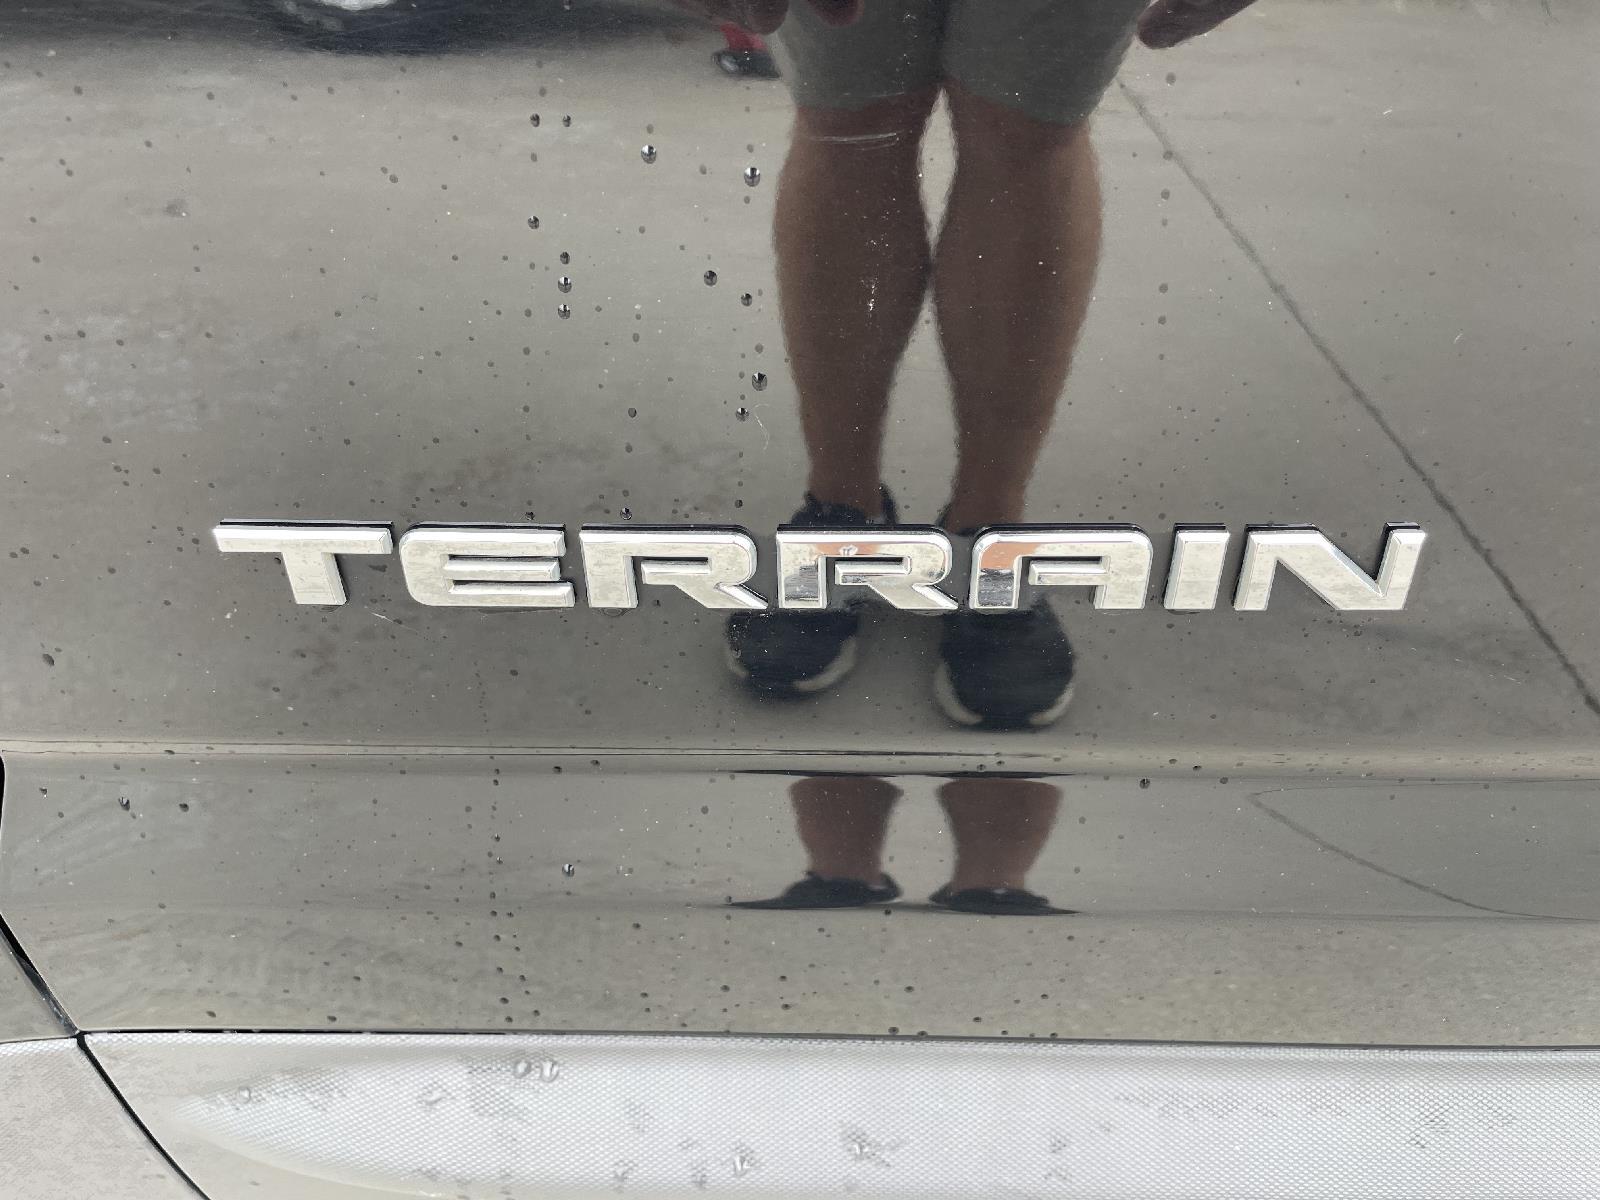 Used 2017 GMC Terrain SLT SUV for sale in Lincoln NE